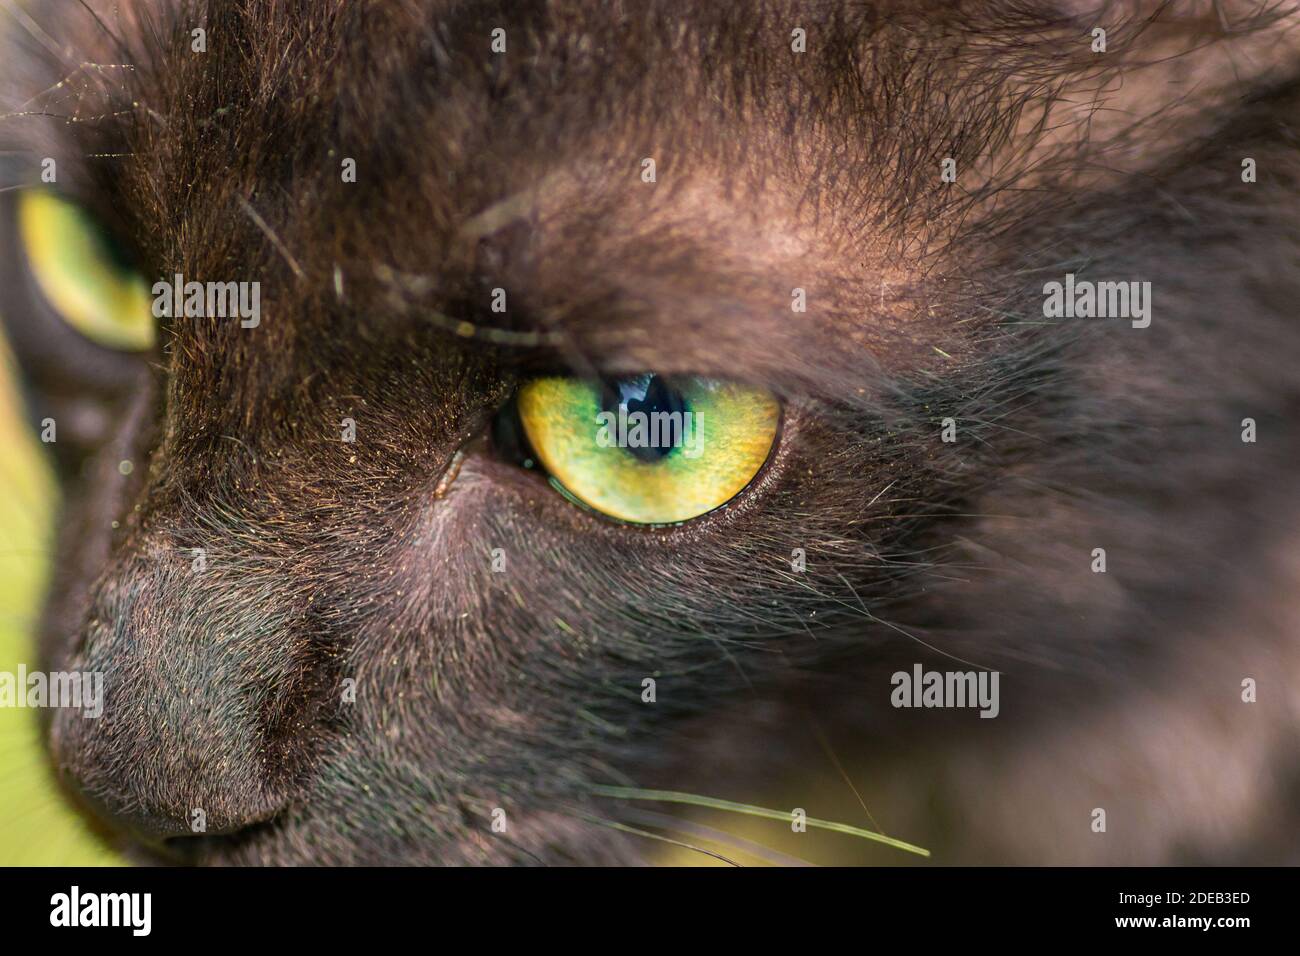 una messa a fuoco netta bloccata sopra alla preda, primo piano macro fotografia degli occhi verdi del gatto del bambino giovane, dall'alto. Foto Stock